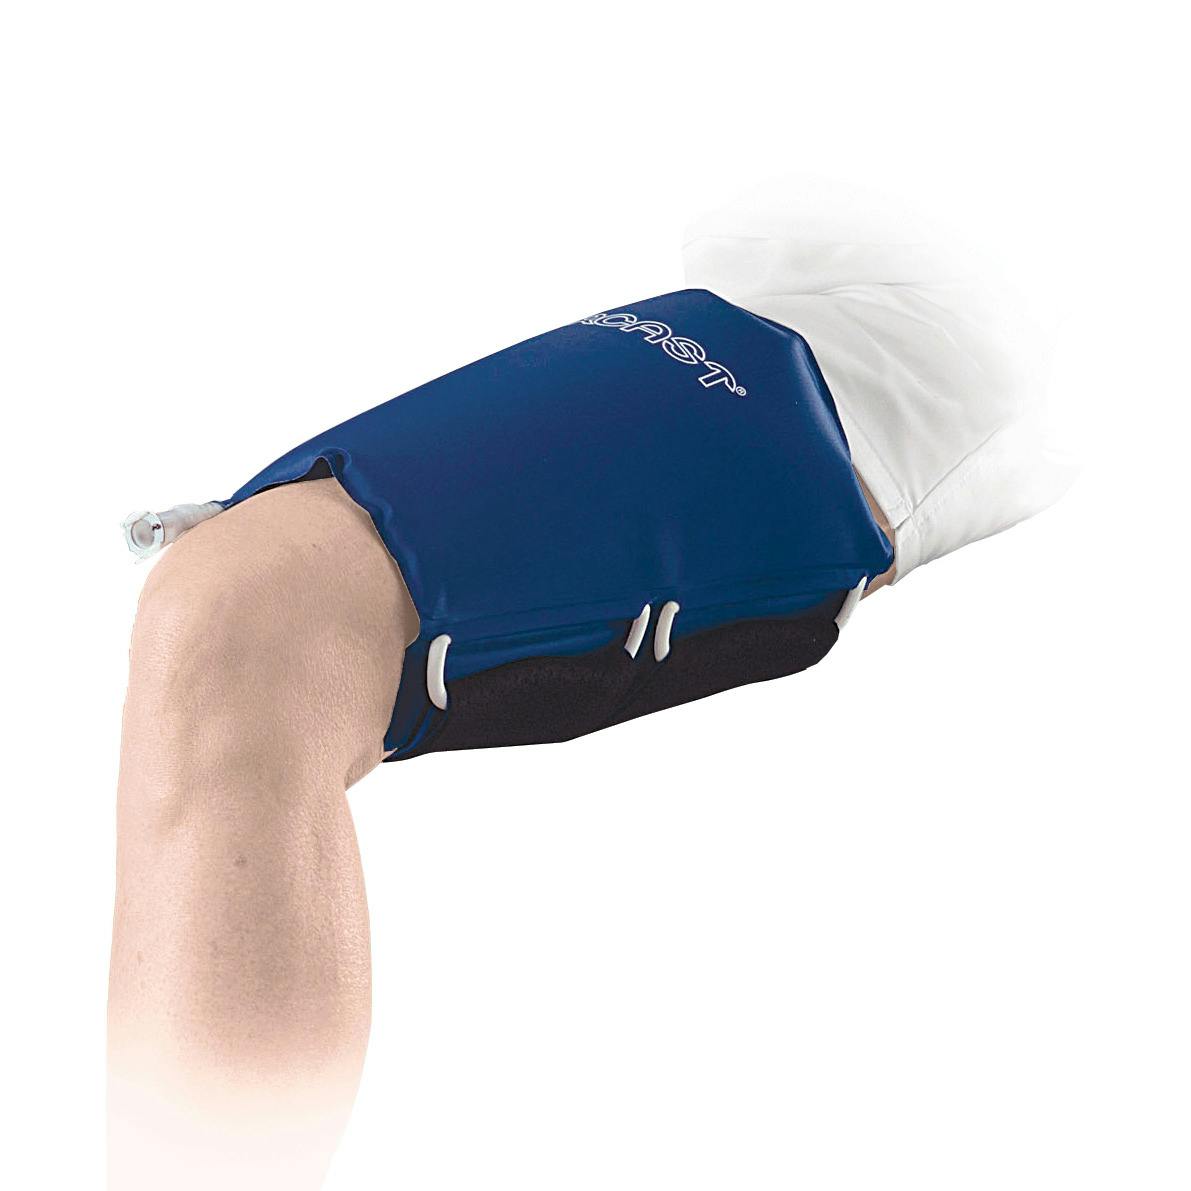 Produktbild AIRCAST® Cryo/Cuff™-Oberschenkelbandage Kälte-Therapie-System zur Reduktion von Schmerzen und Schwellungen